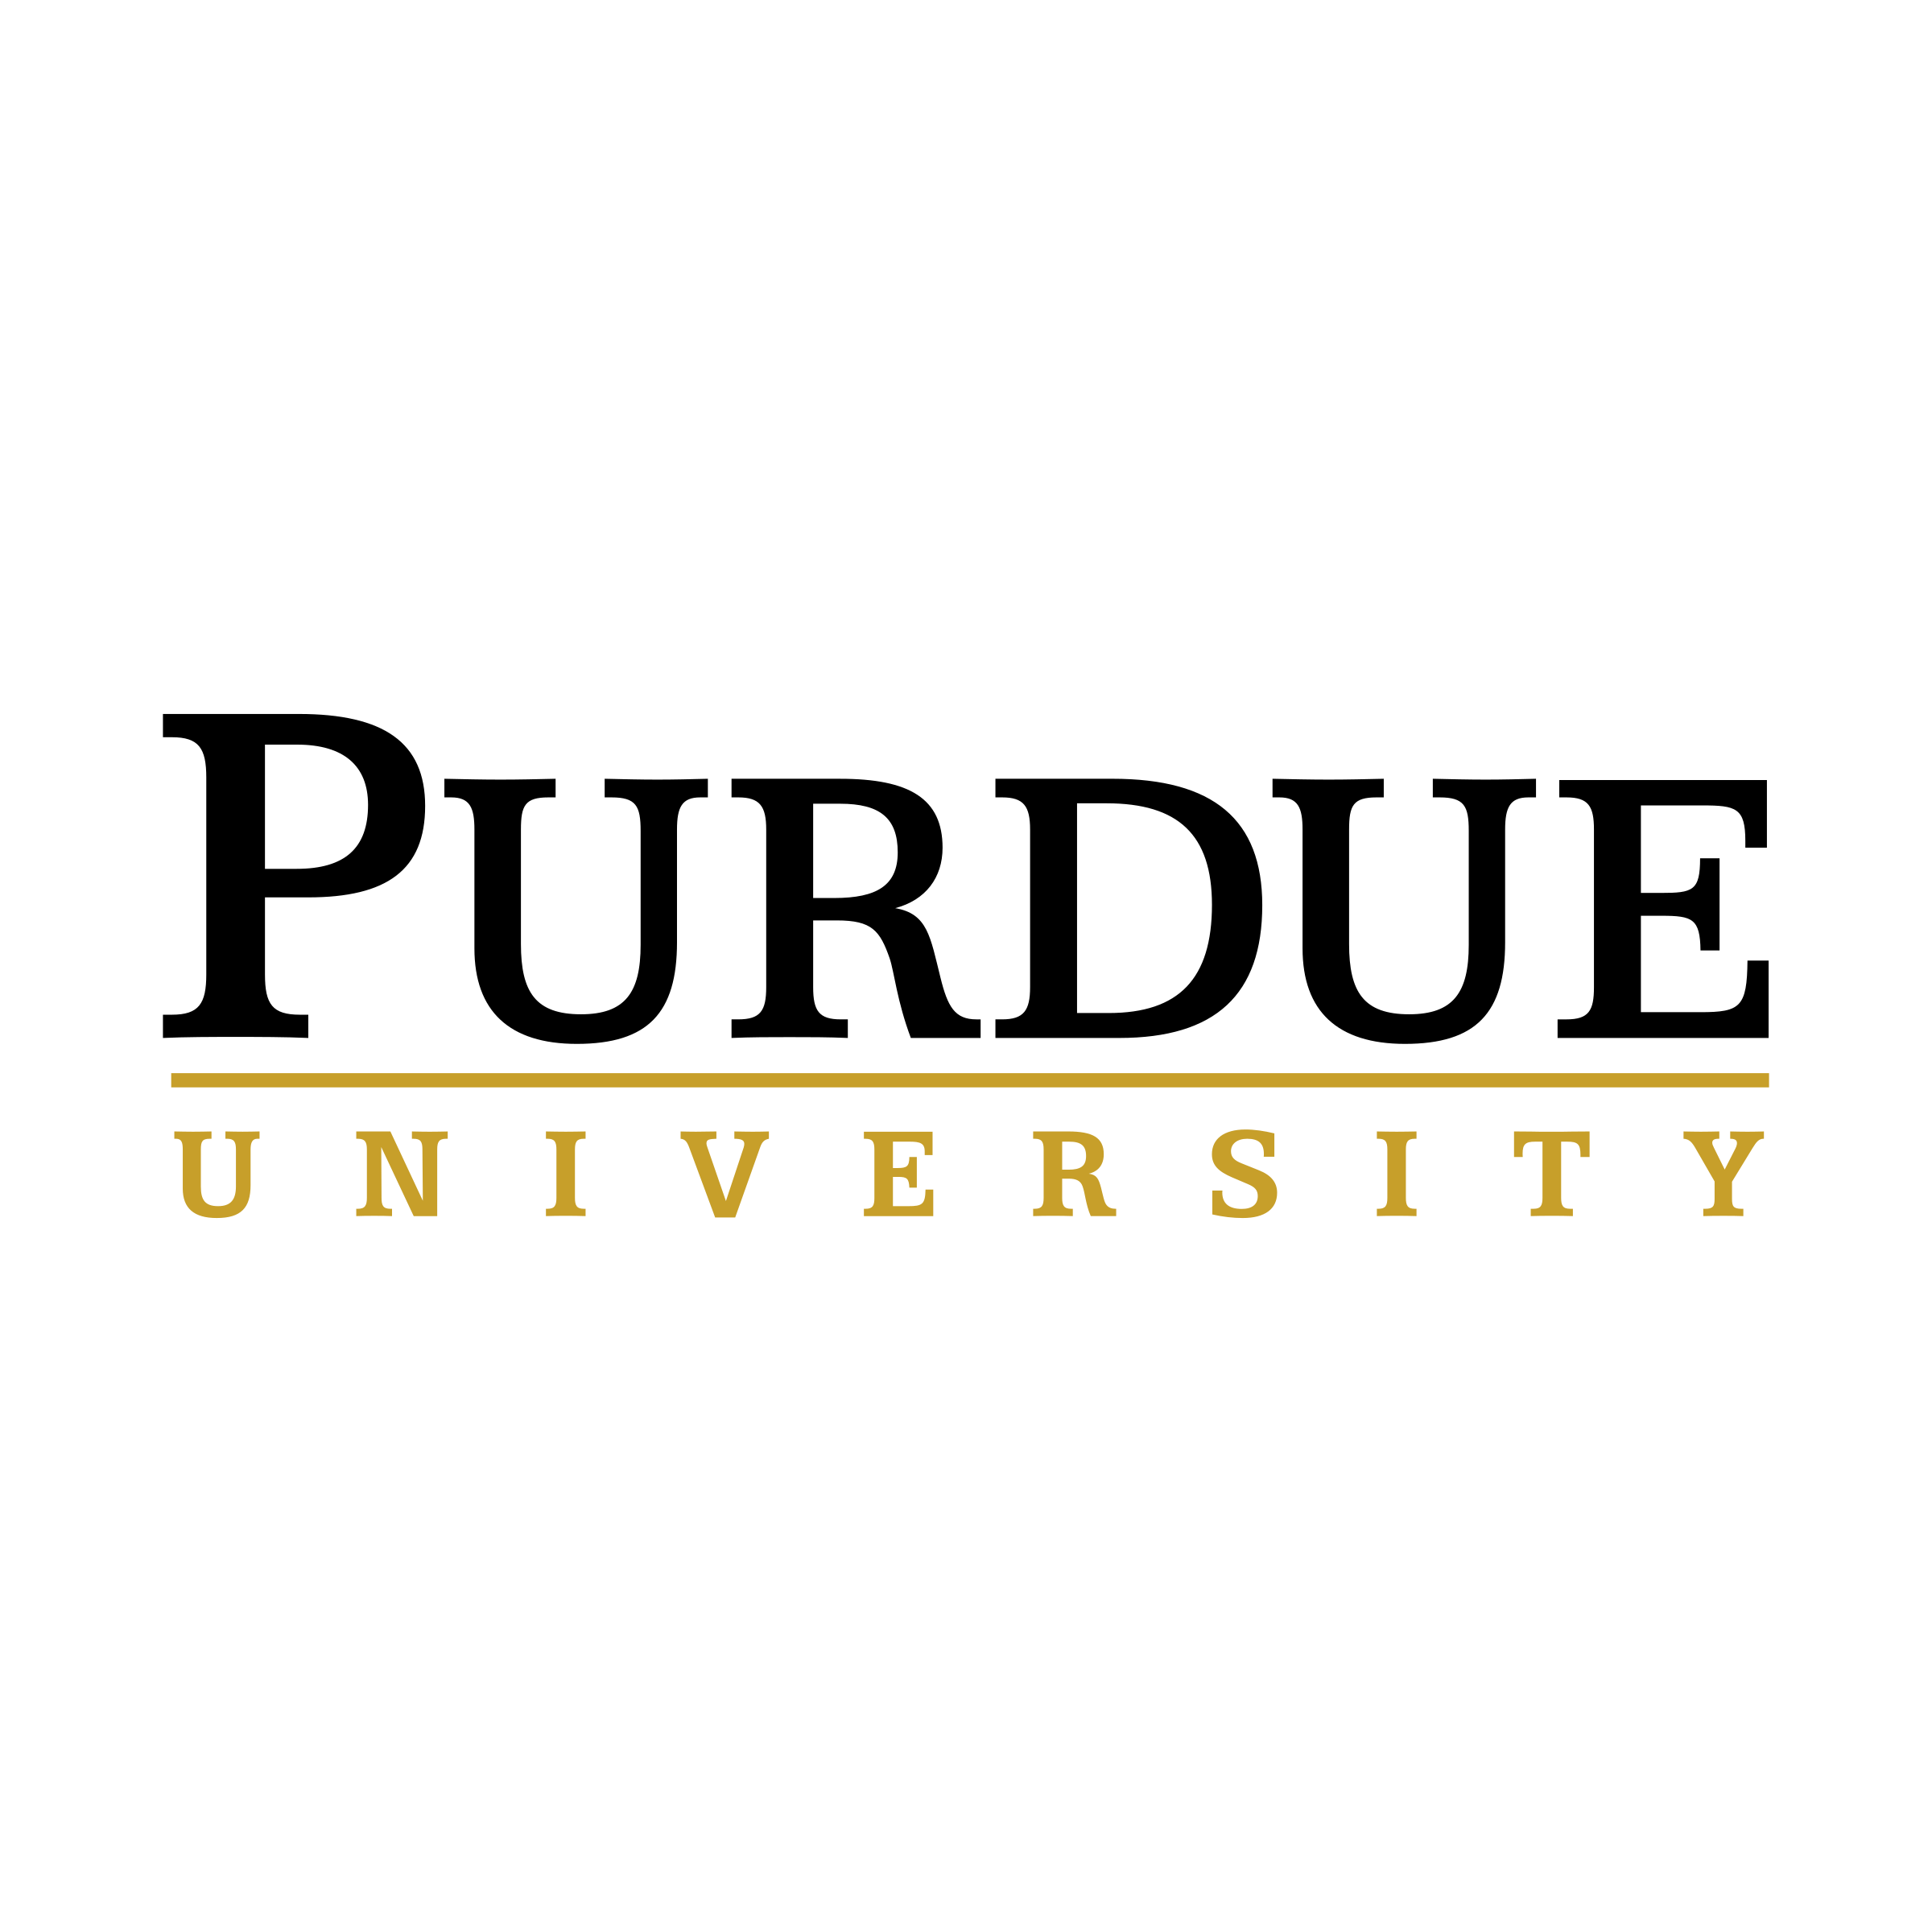 purdue-university-1-logo-png-transparent